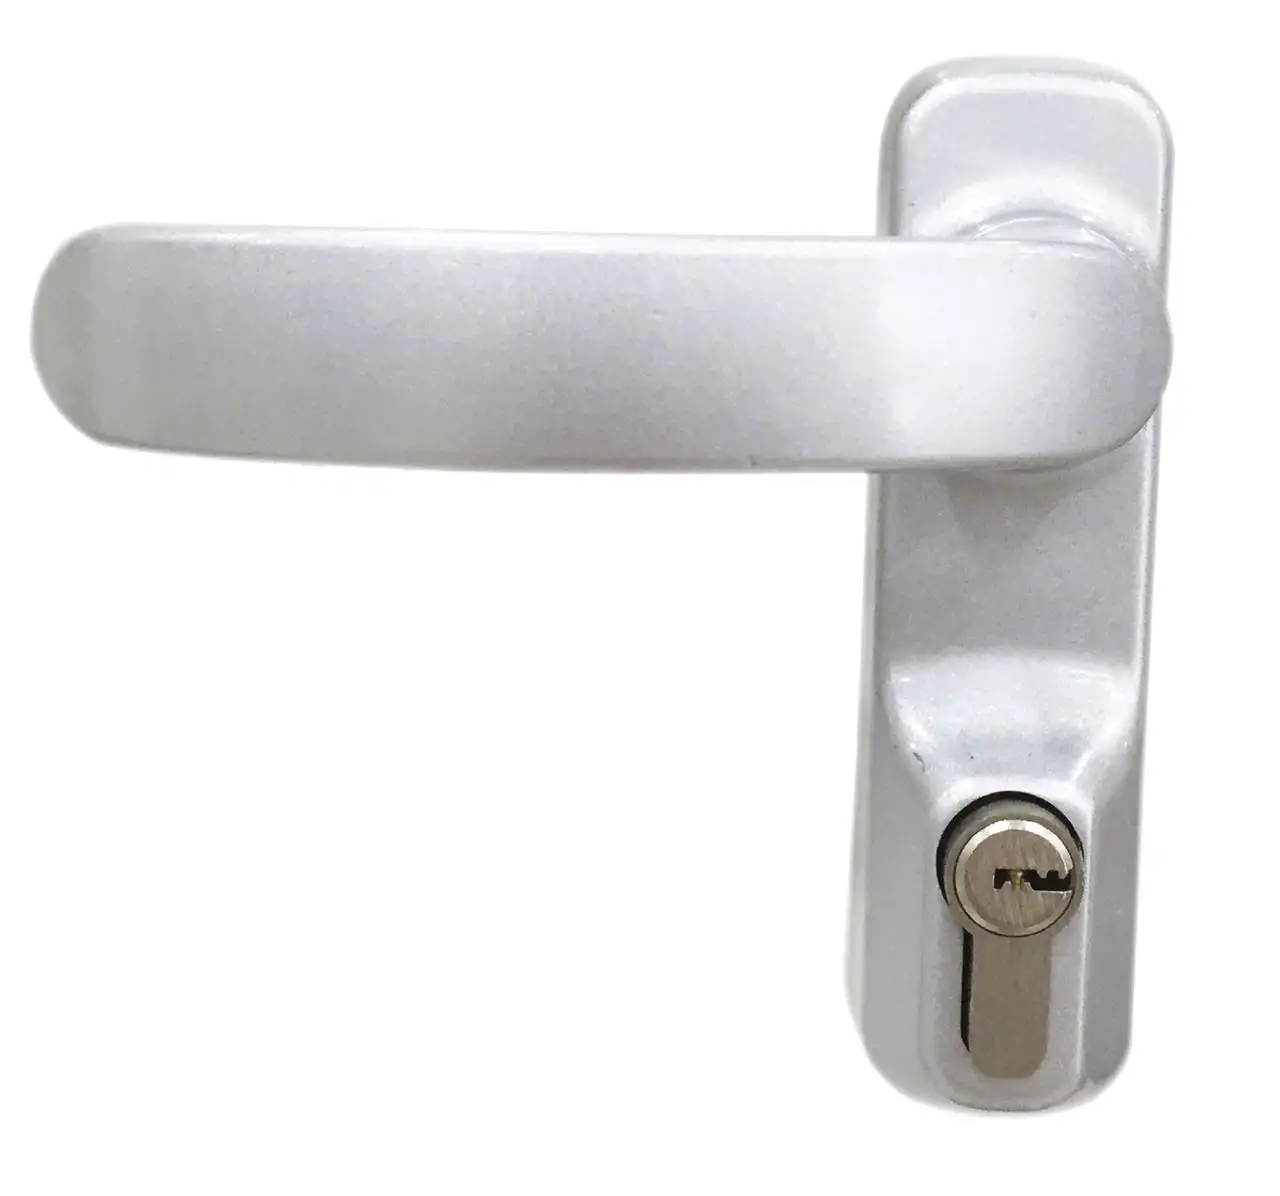 Proveedor chino 019P adecuado para grosor de puerta, palanca de ajuste de 45-50mm para dispositivo de salida, manija de puerta con cilindro de bloqueo